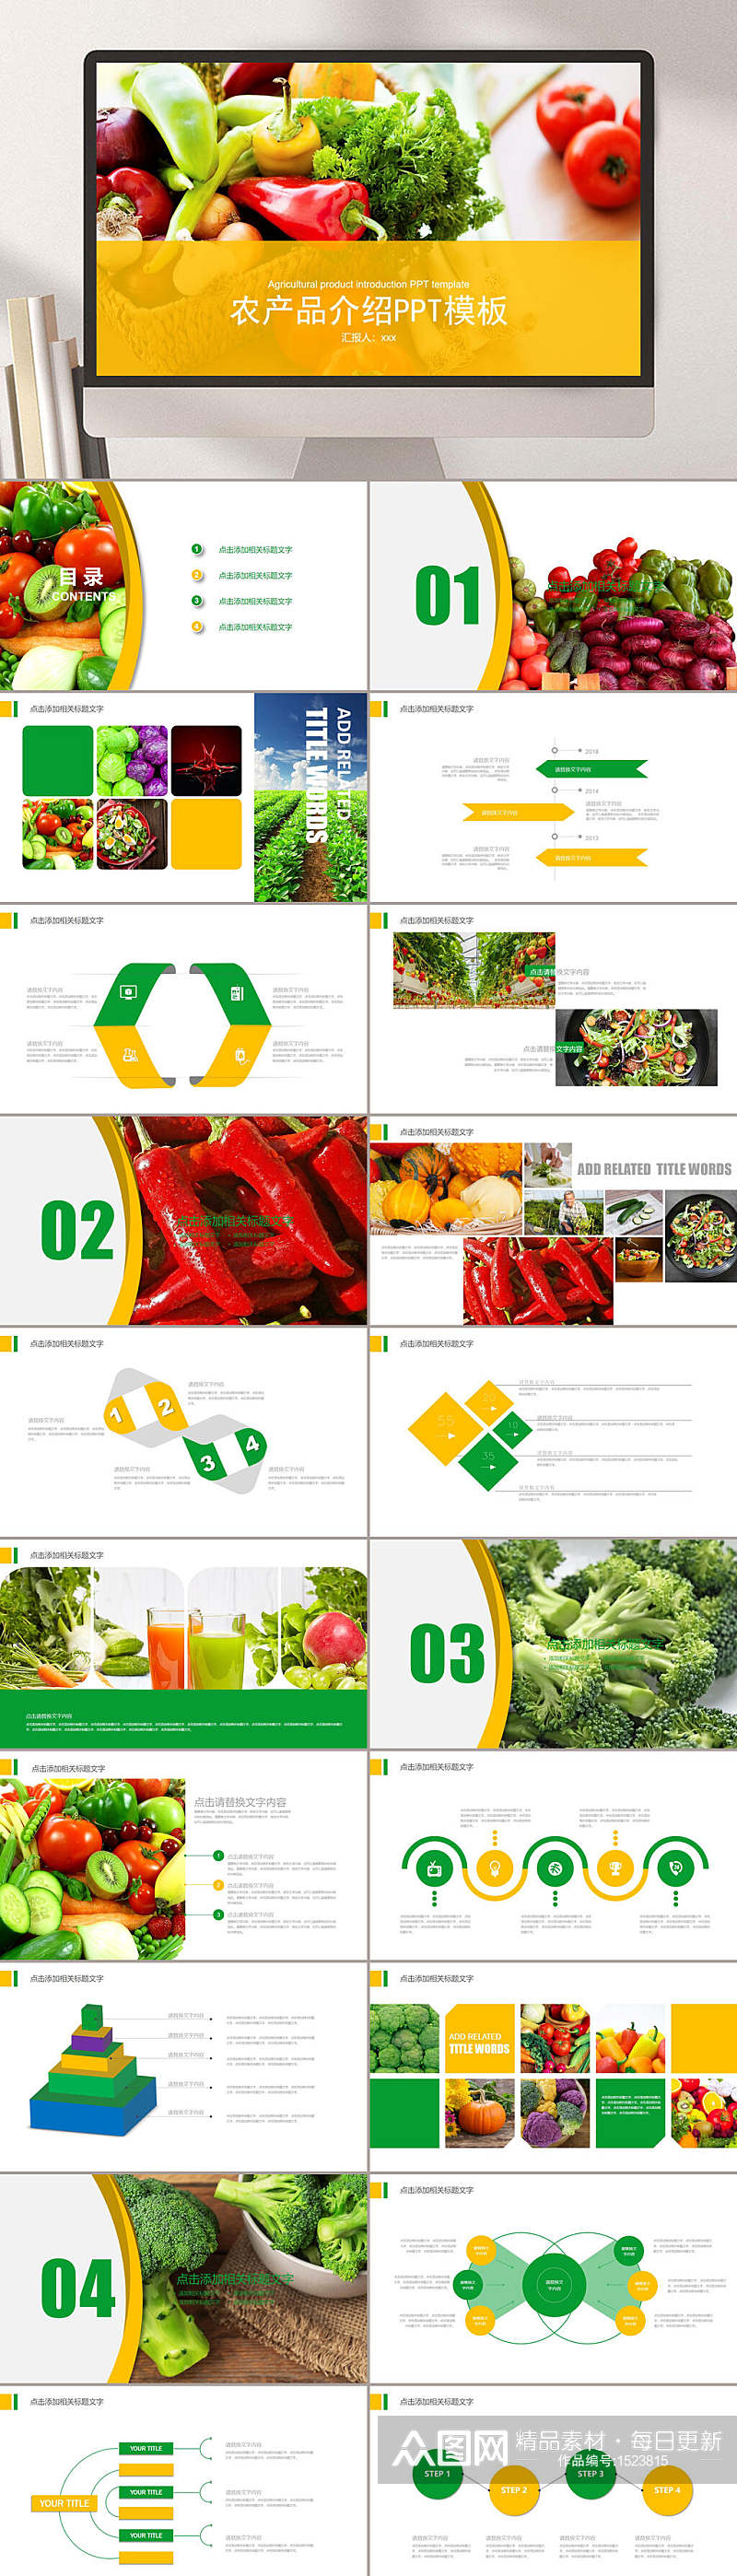 农产品水果蔬菜PPT模板素材